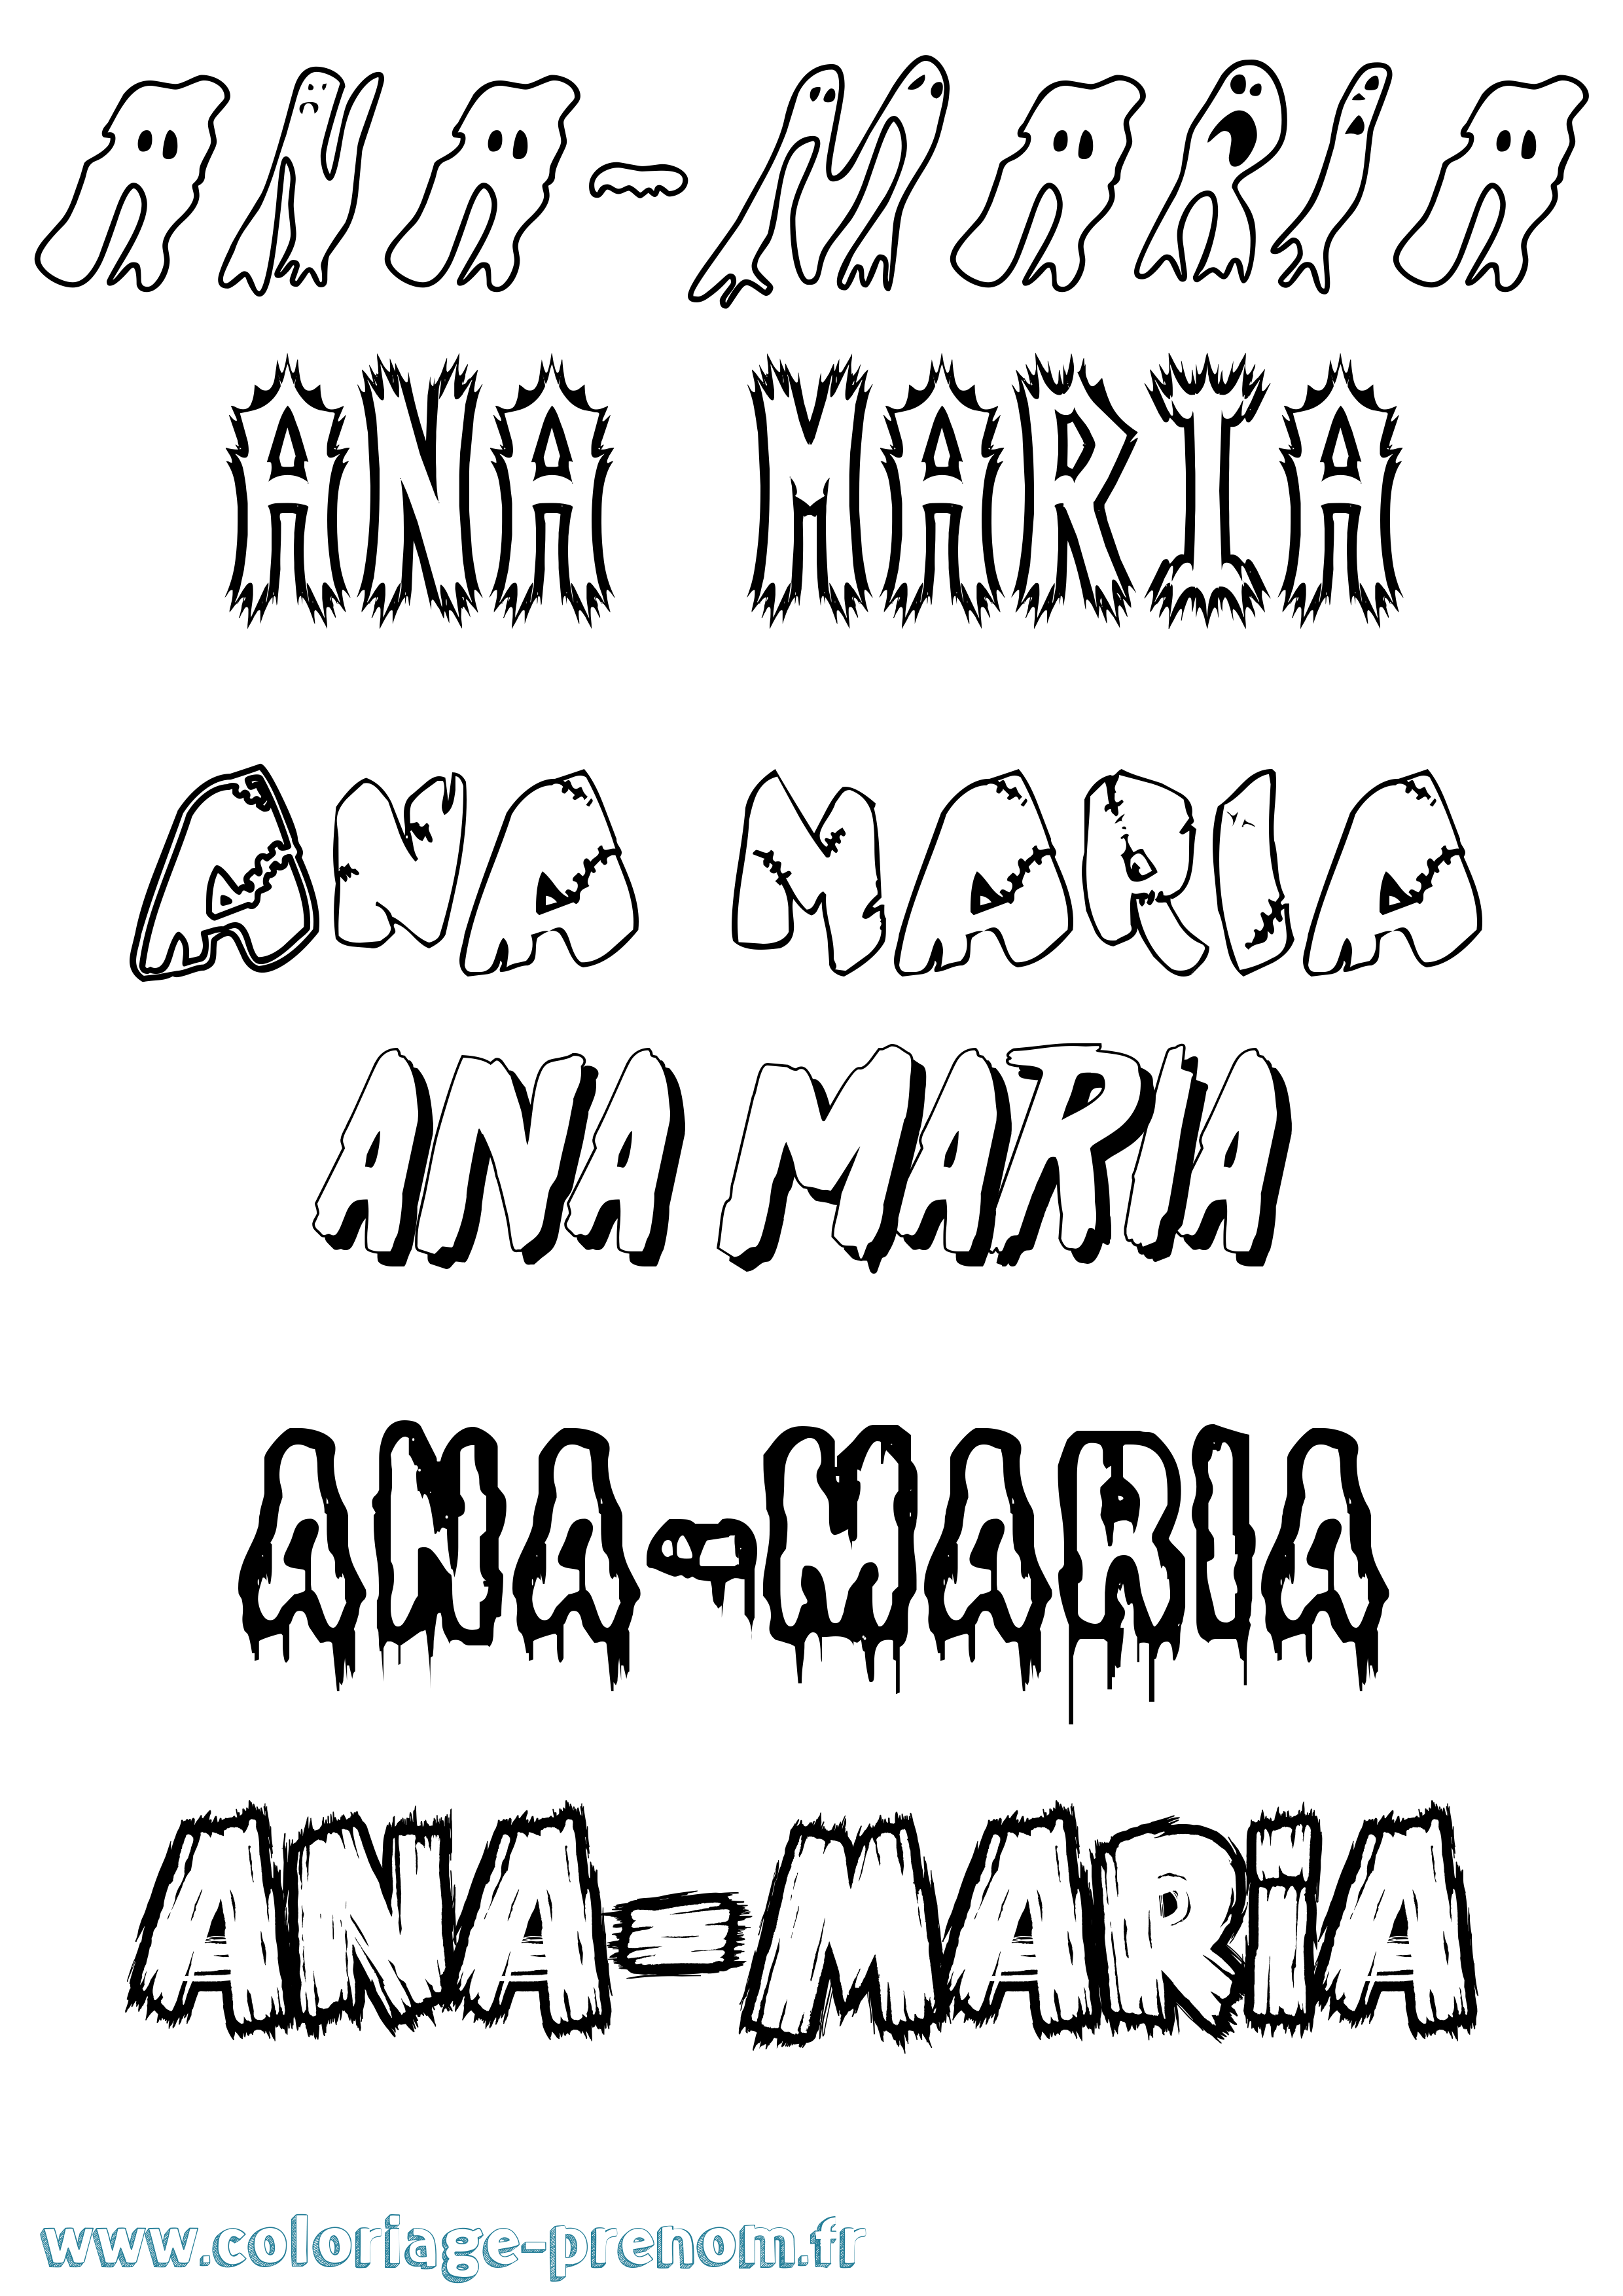 Coloriage prénom Ana-Maria Frisson